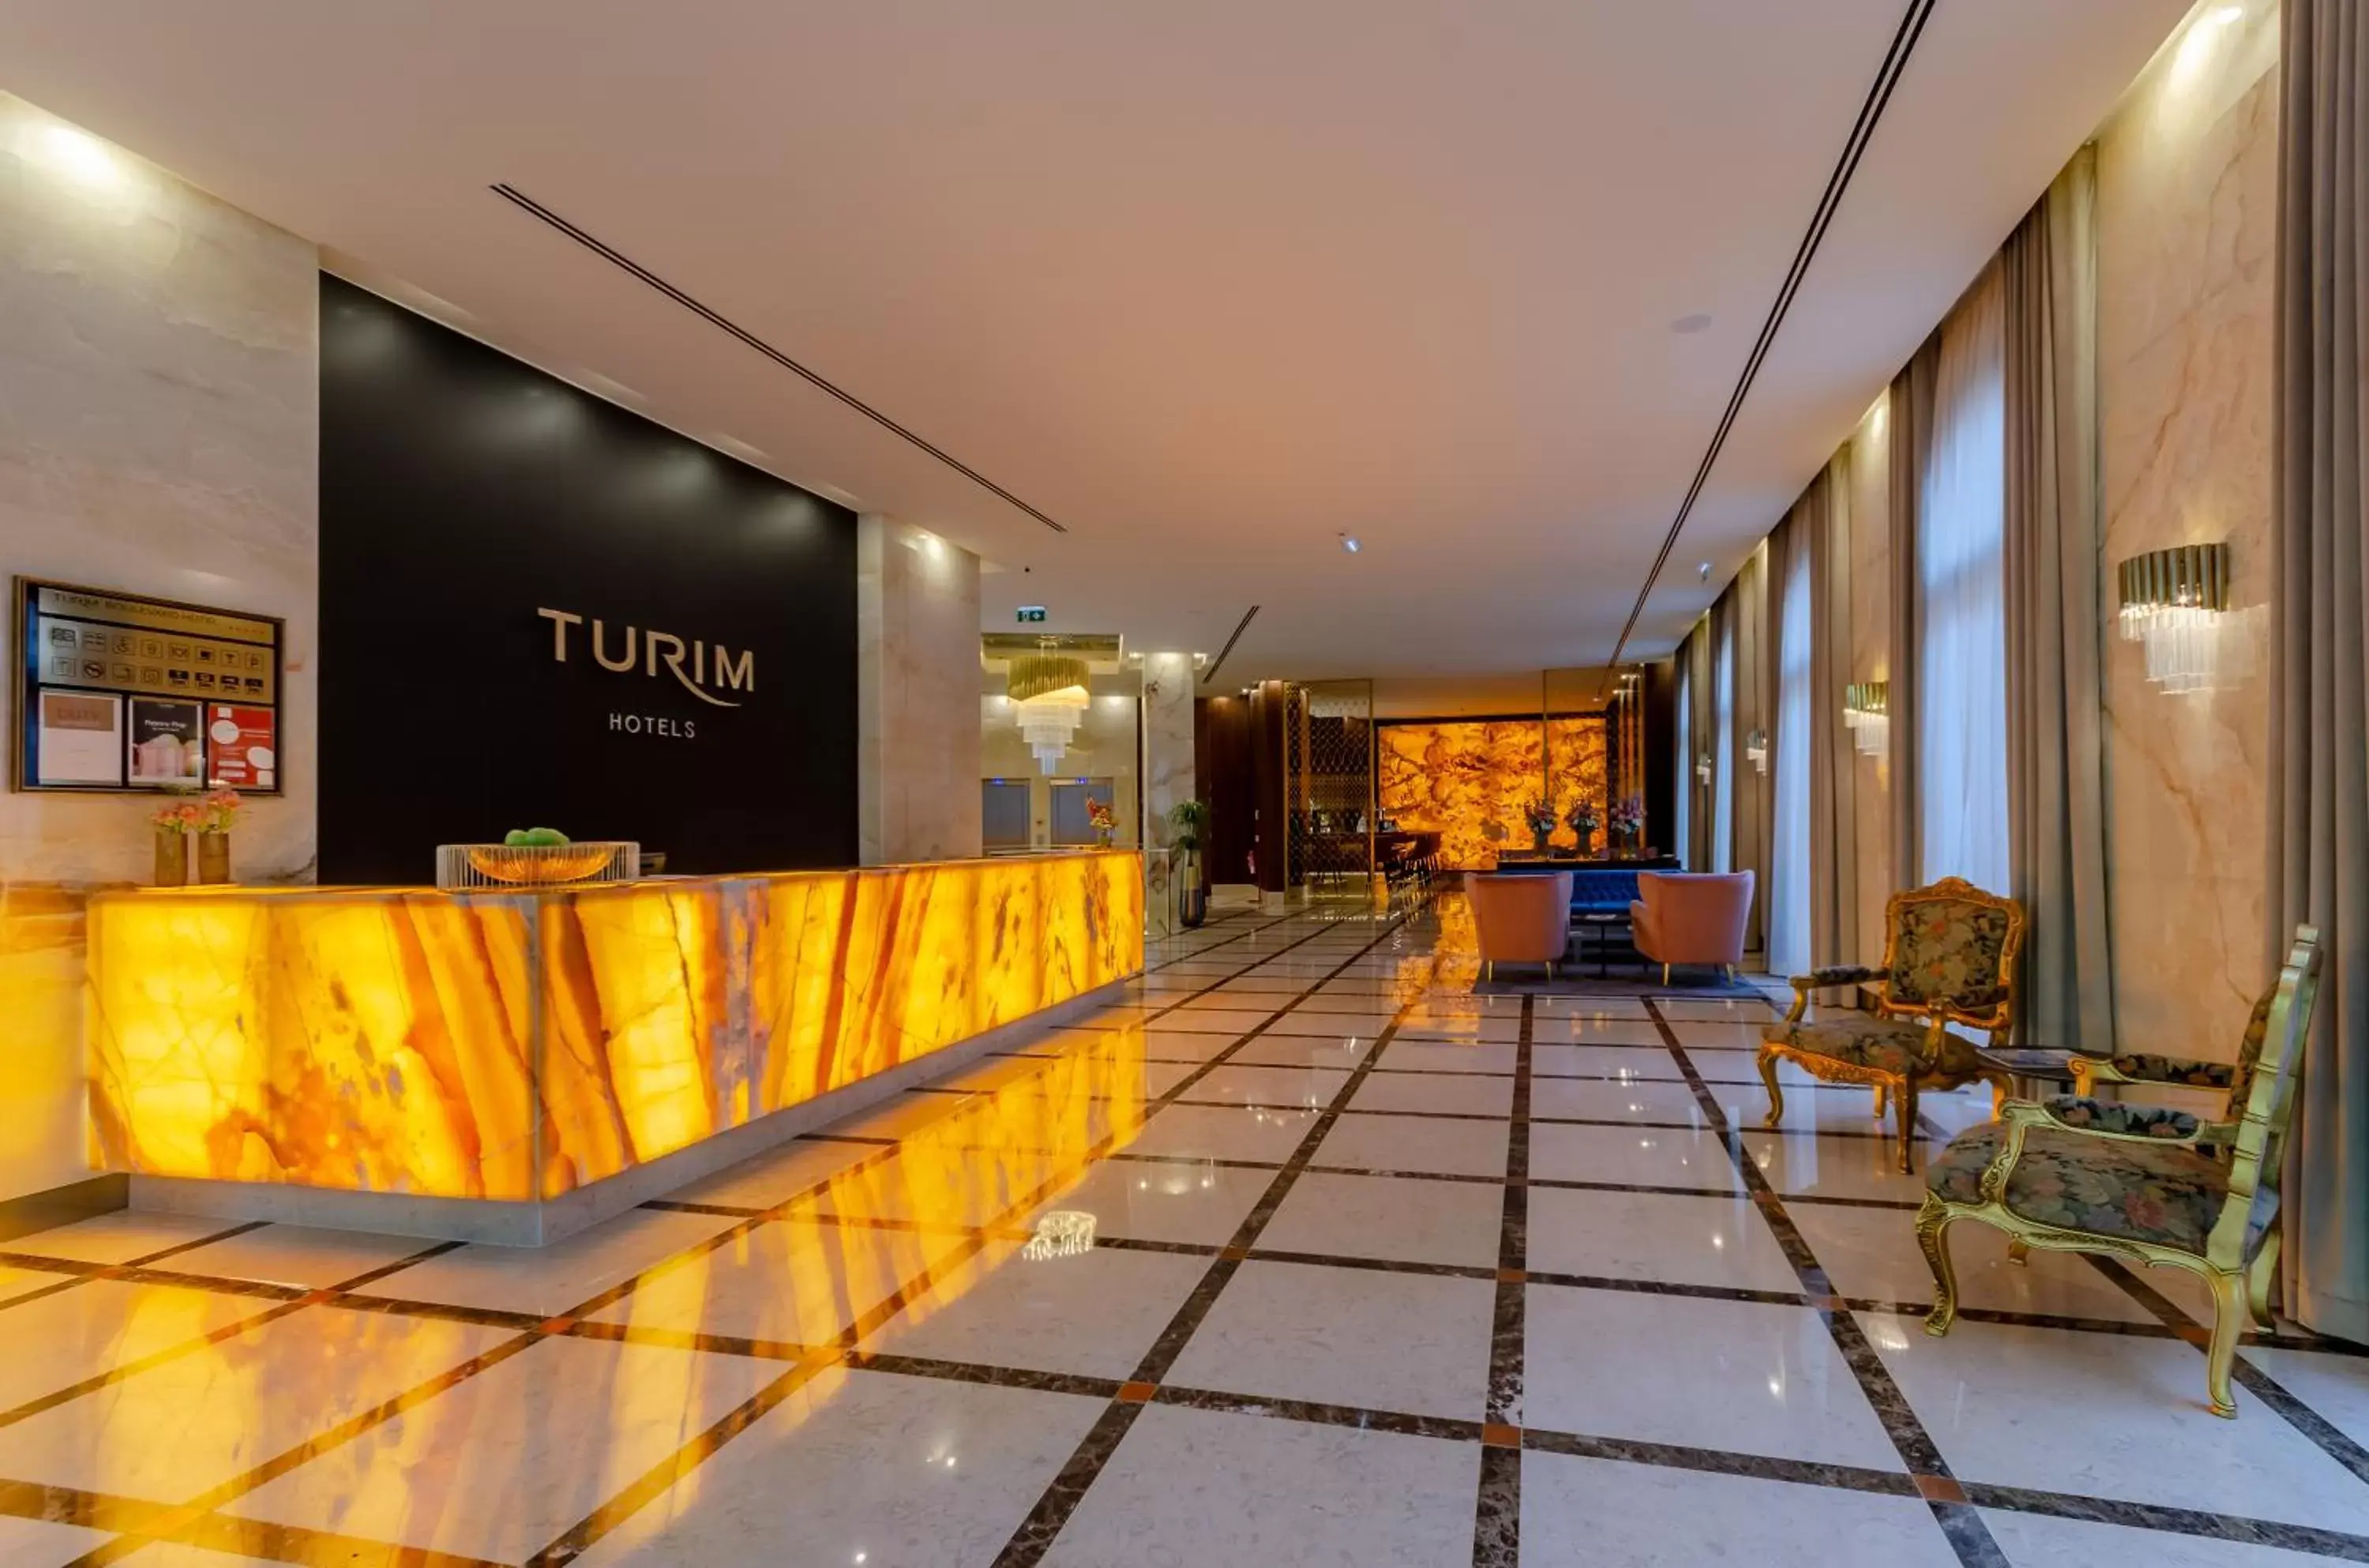 Lobby or reception, Lobby/Reception in TURIM Boulevard Hotel